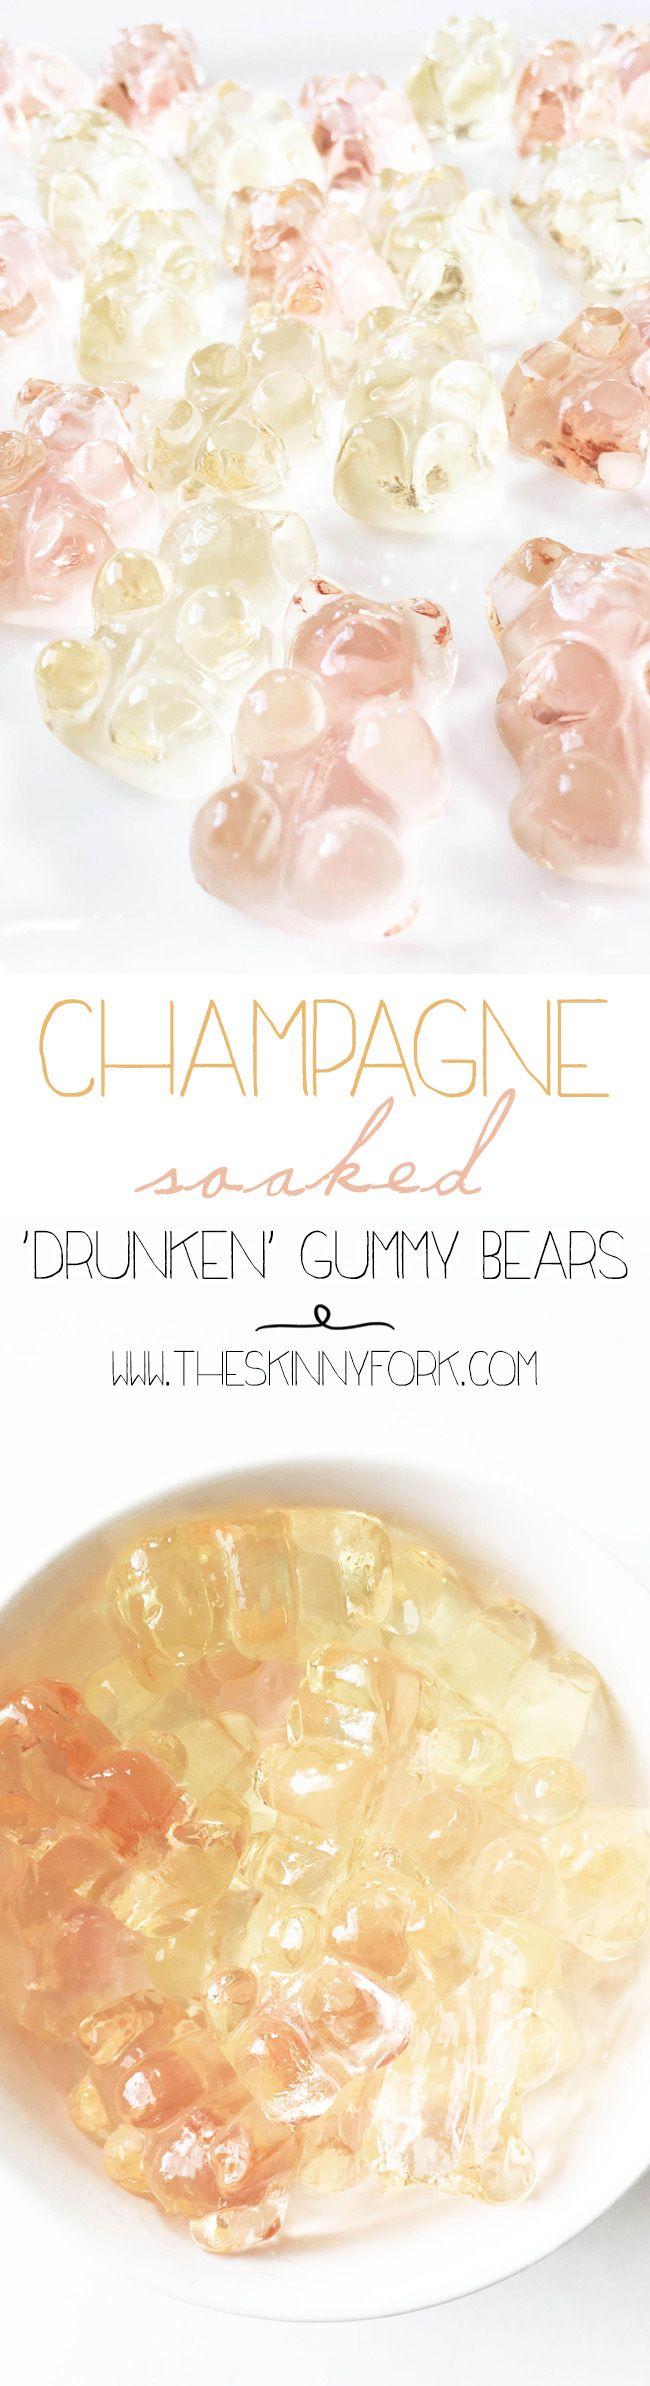 Hochzeit - Champagne Soaked 'Drunken' Gummy Bears